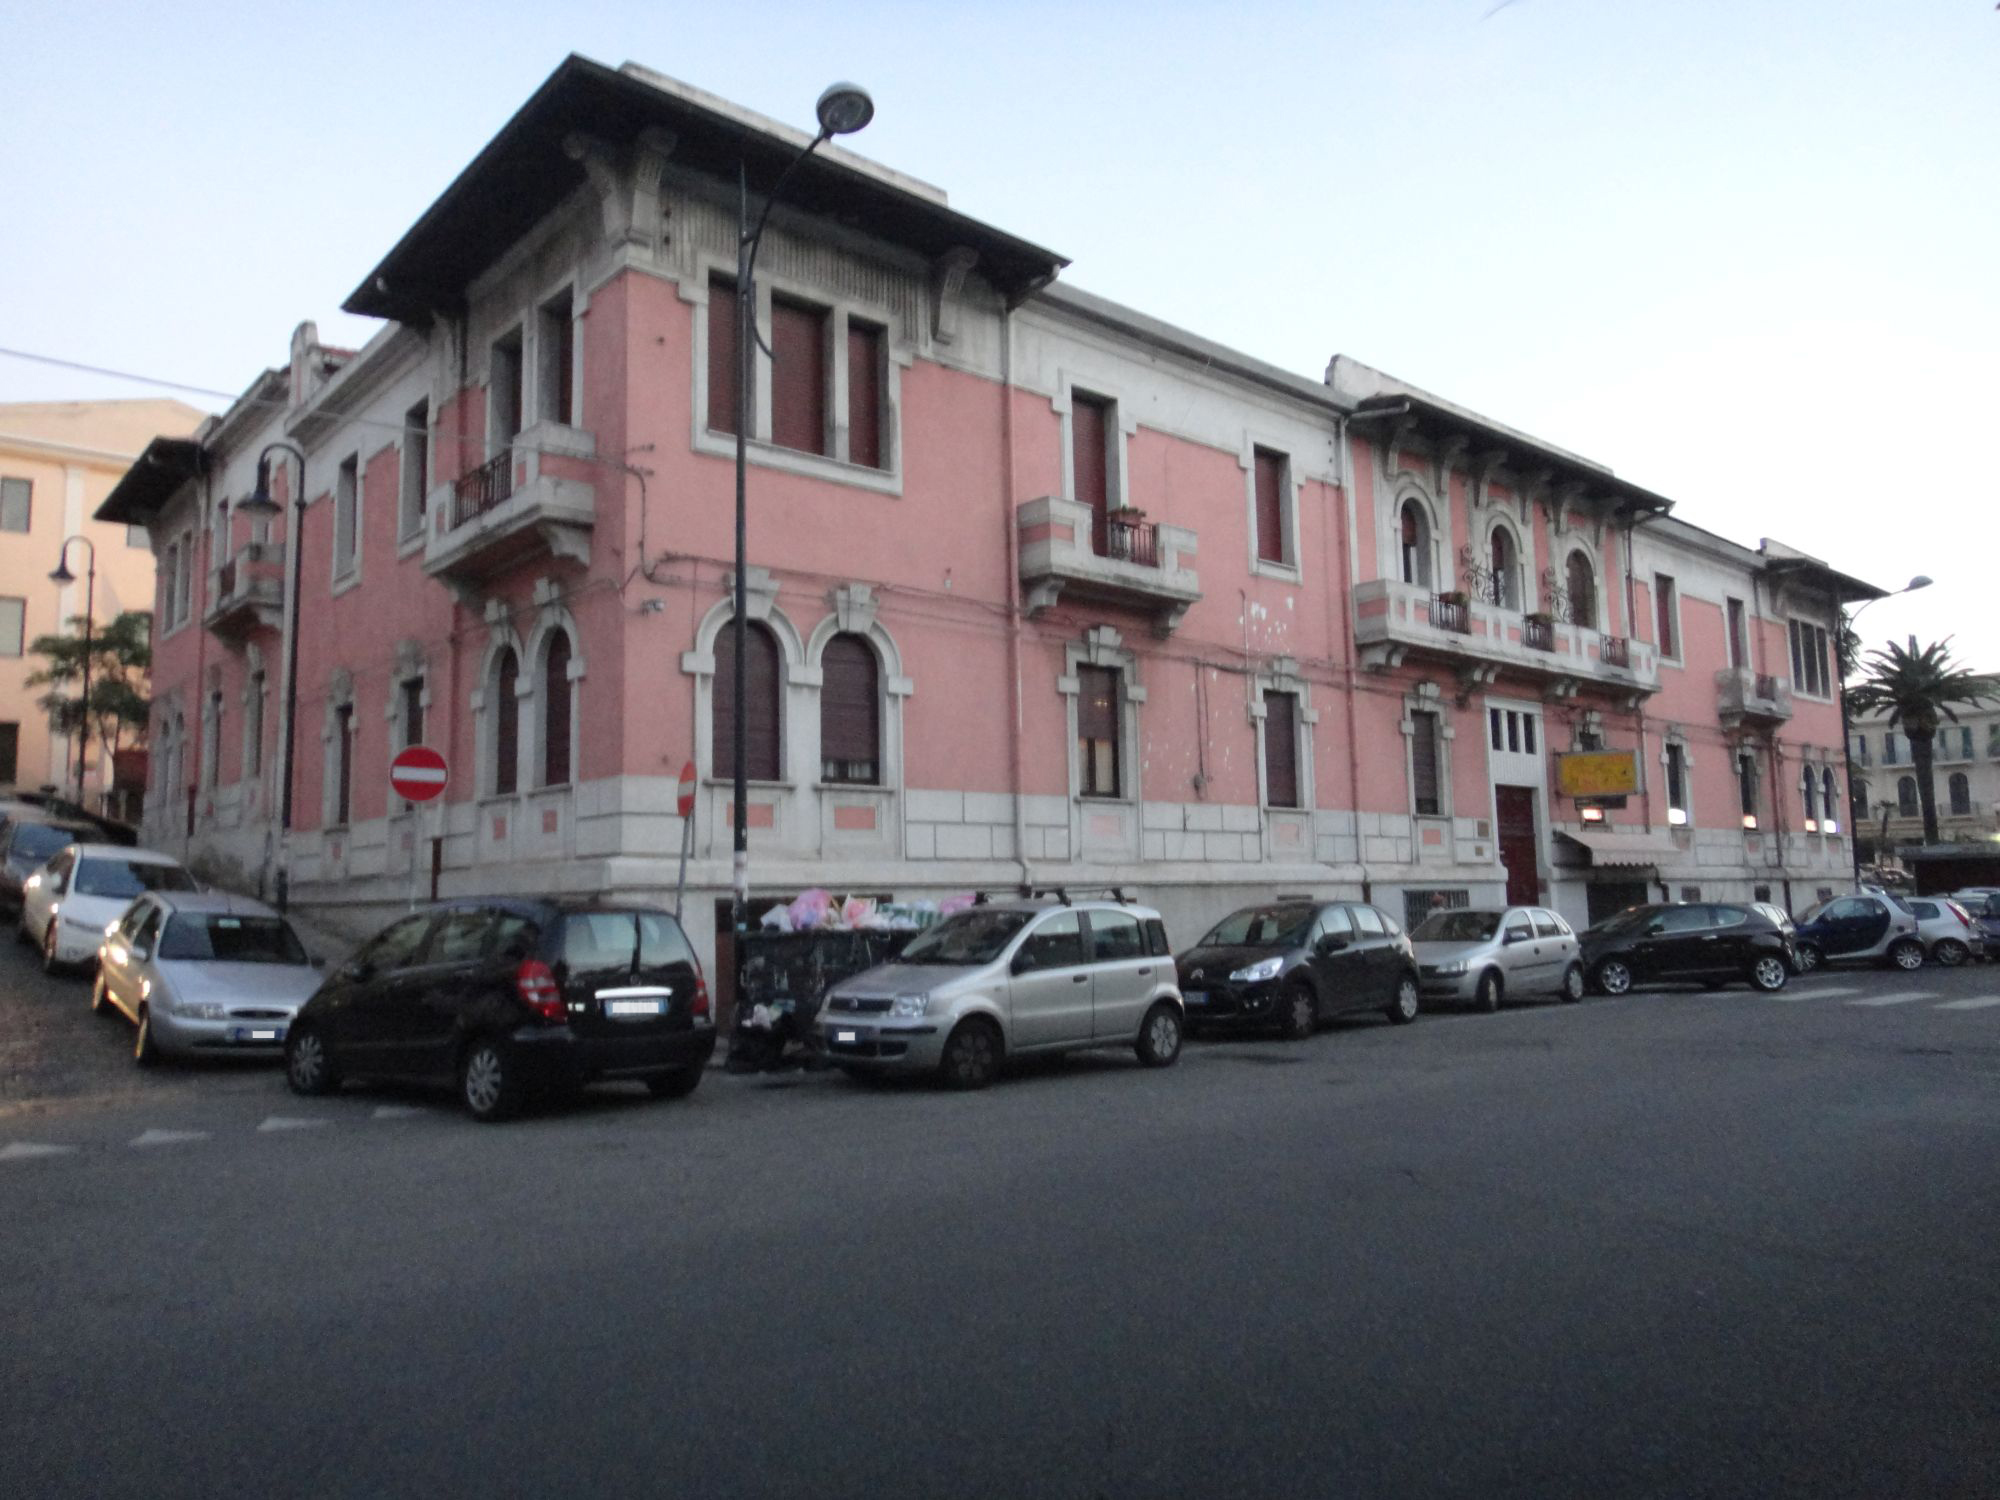 Case per impiegati dello Stato (casa, popolare) - Reggio di Calabria (RC) 